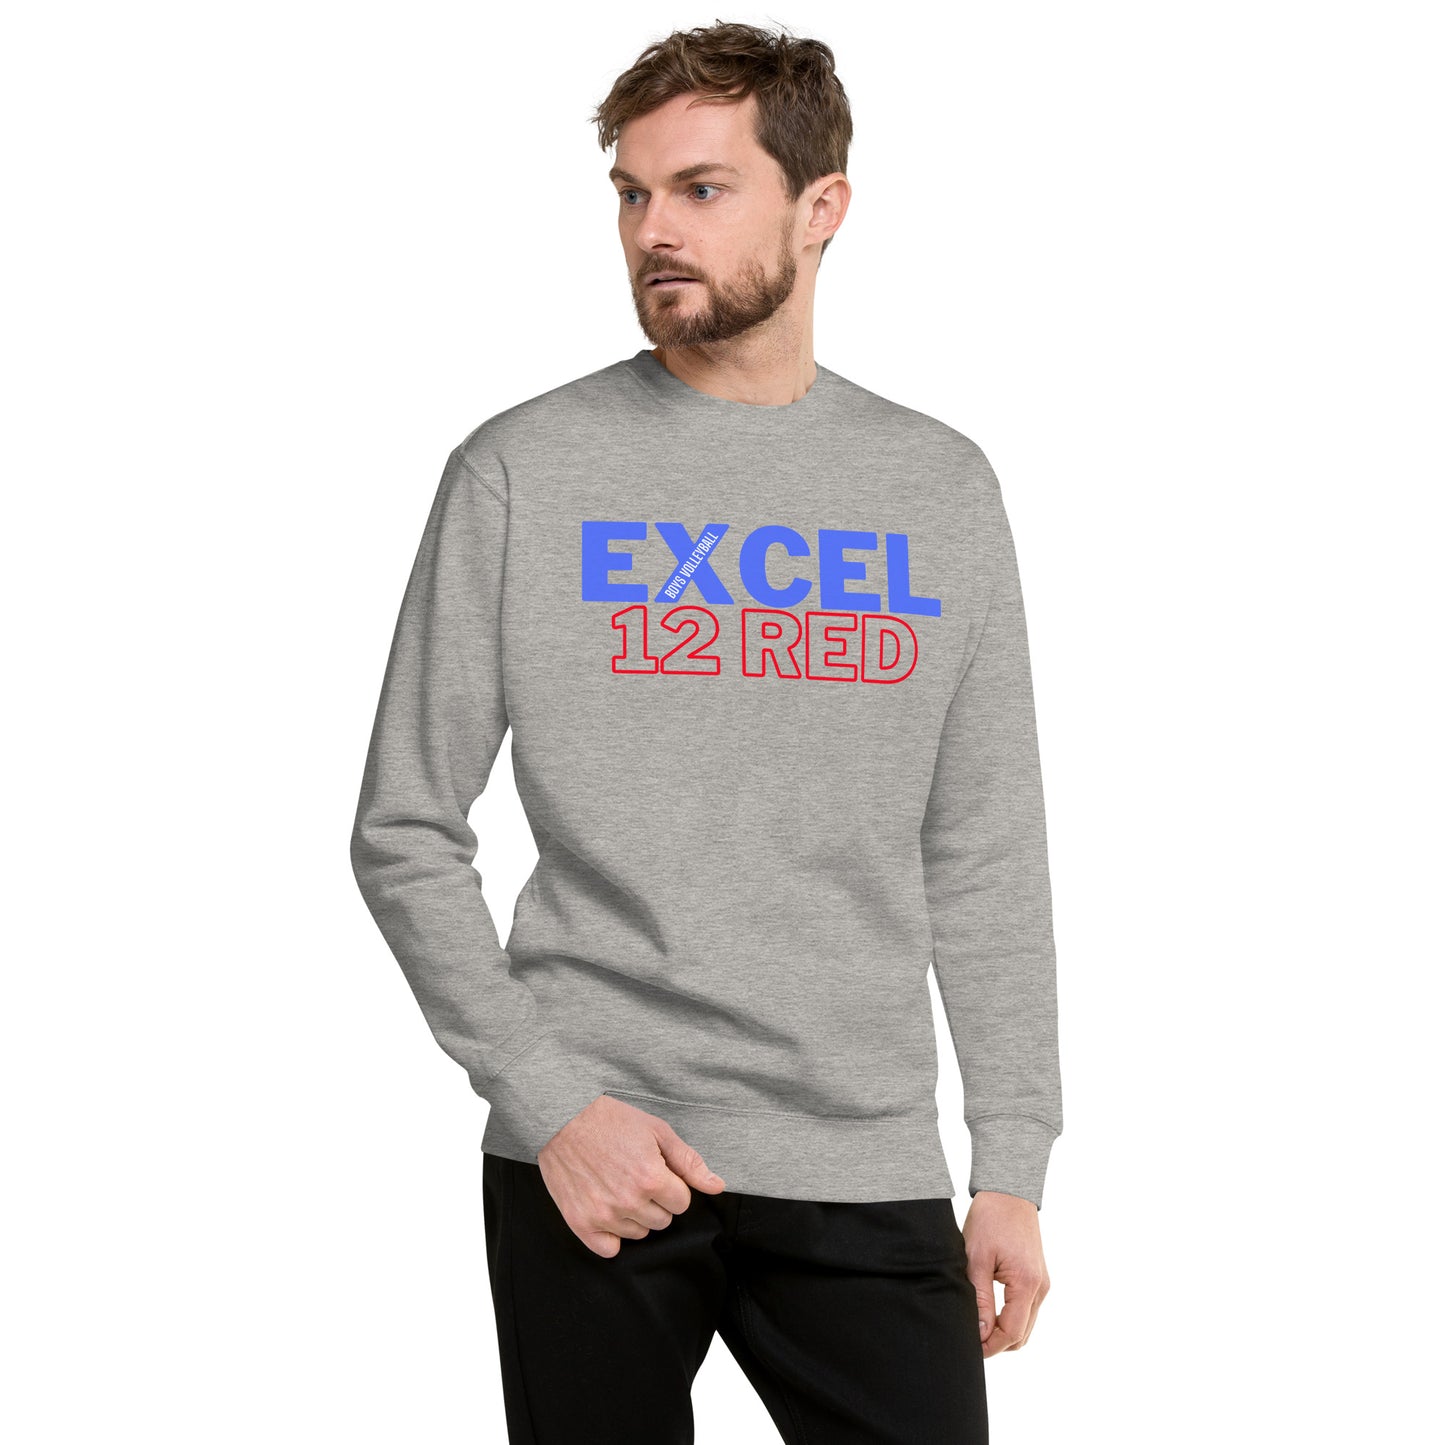 Excel - Boys Volleyball - 12 Red - Unisex Premium Sweatshirt